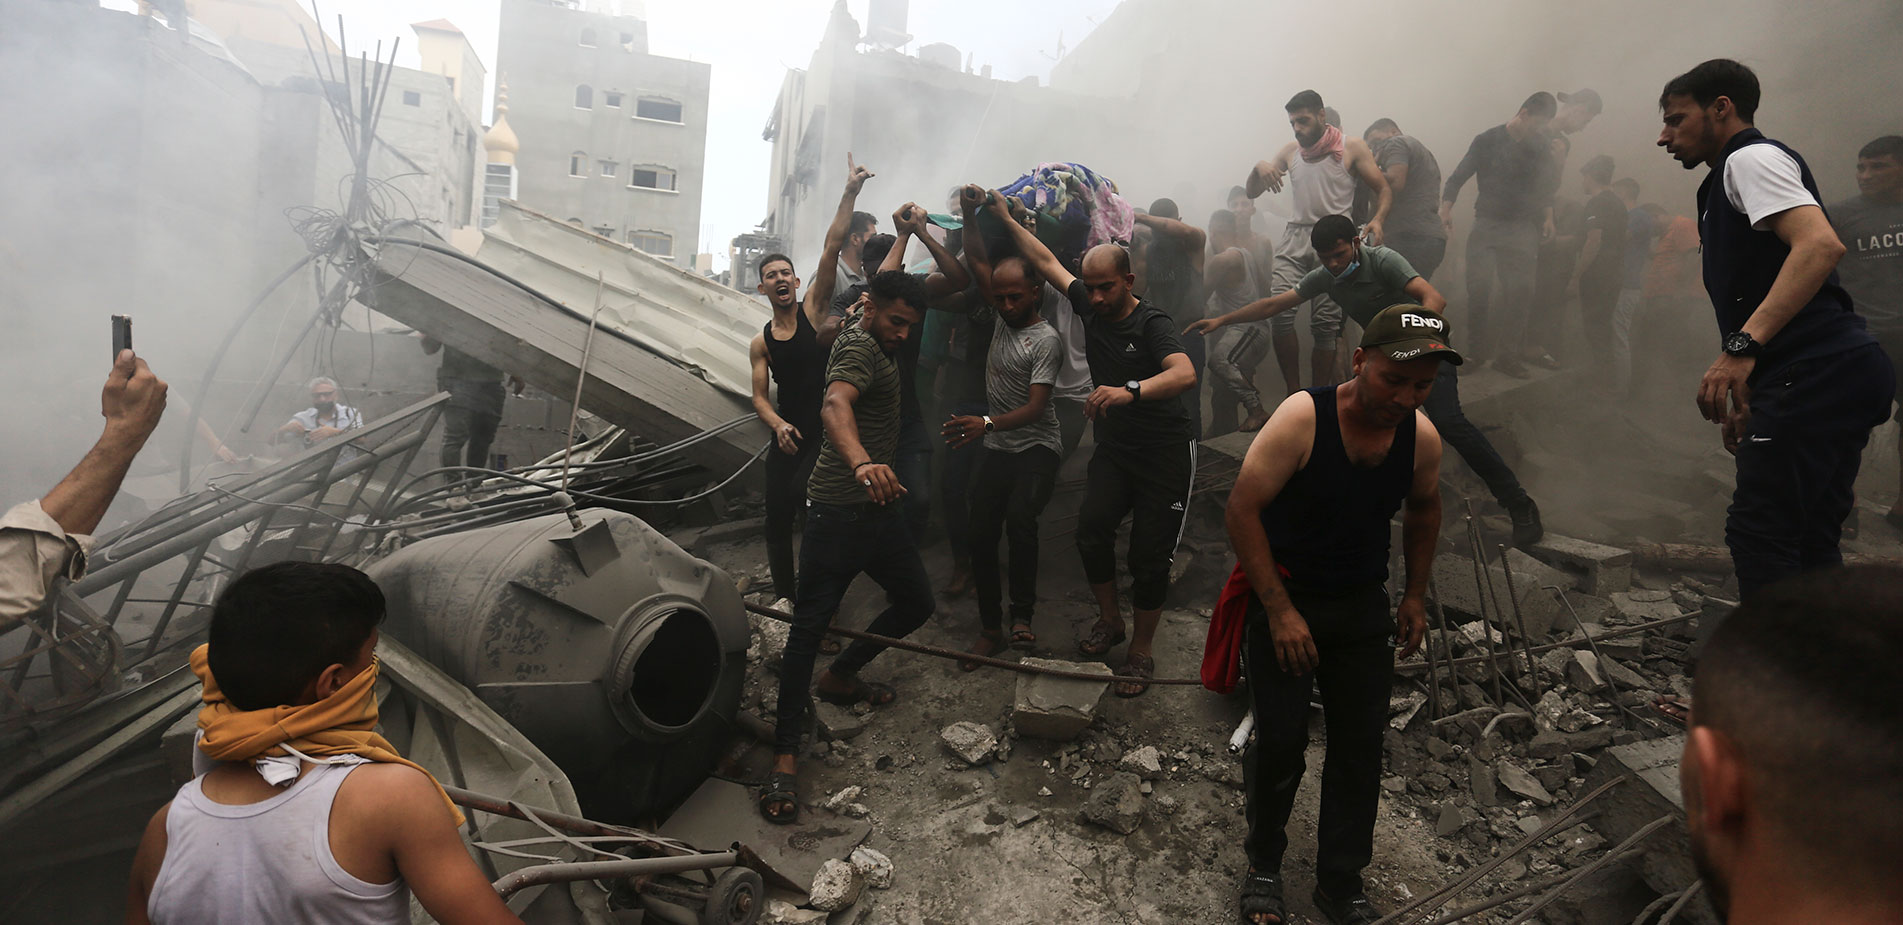 Ο πόλεμος των Fake News στον πόλεμο Ισραήλ – Χαμάς: Όταν η φρίκη αναμιγνύεται με ψέματα